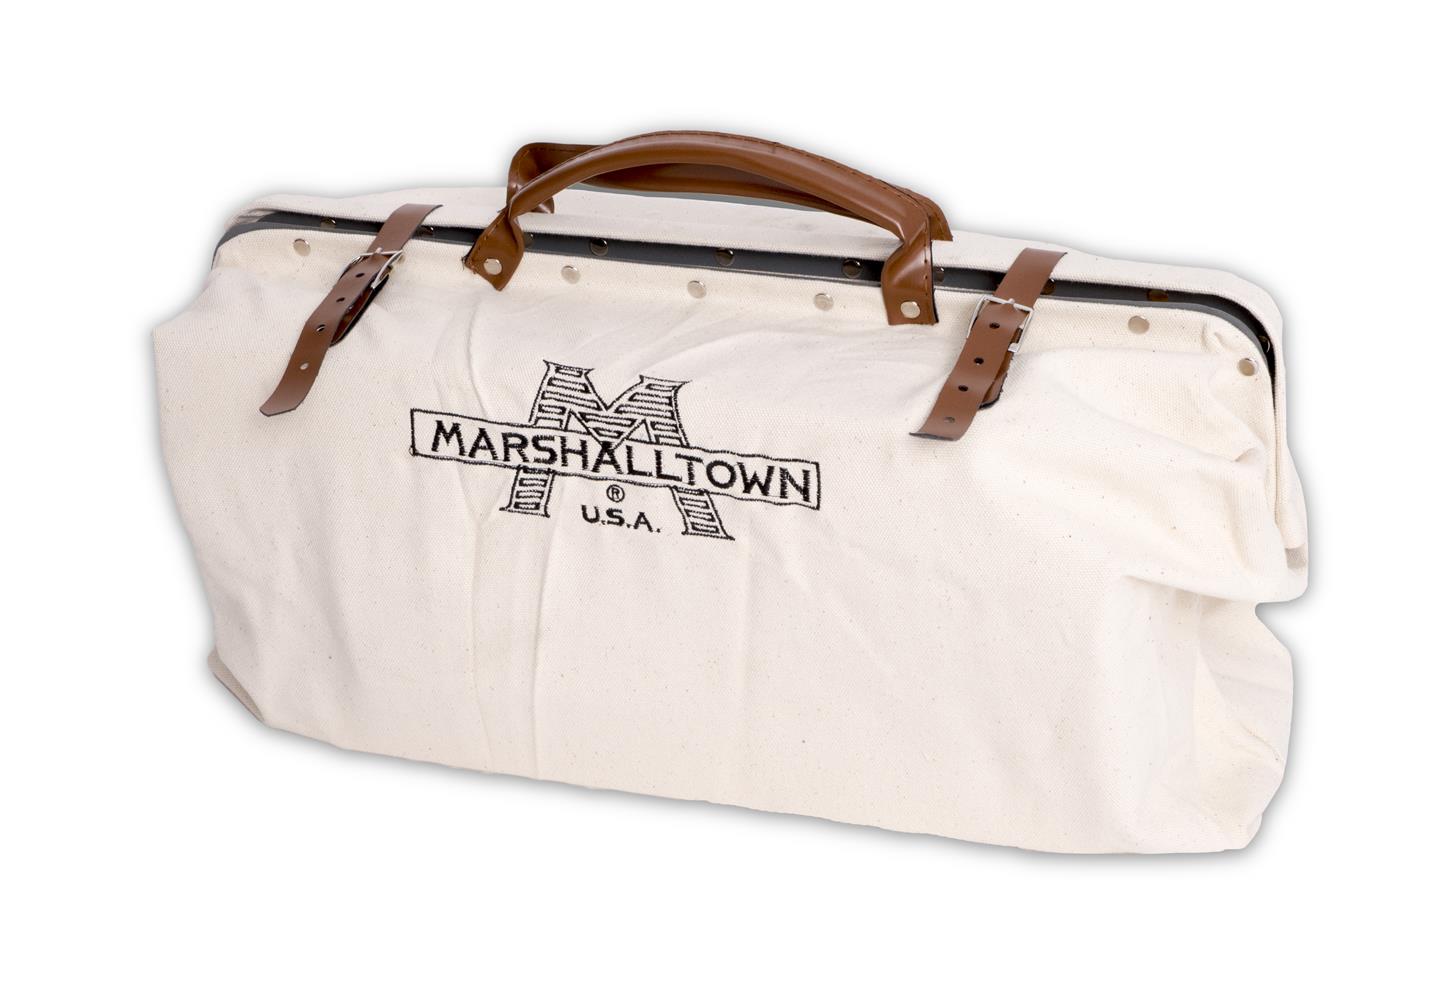 Marshalltown 16431 20 X 15 Canvas Tool Bag